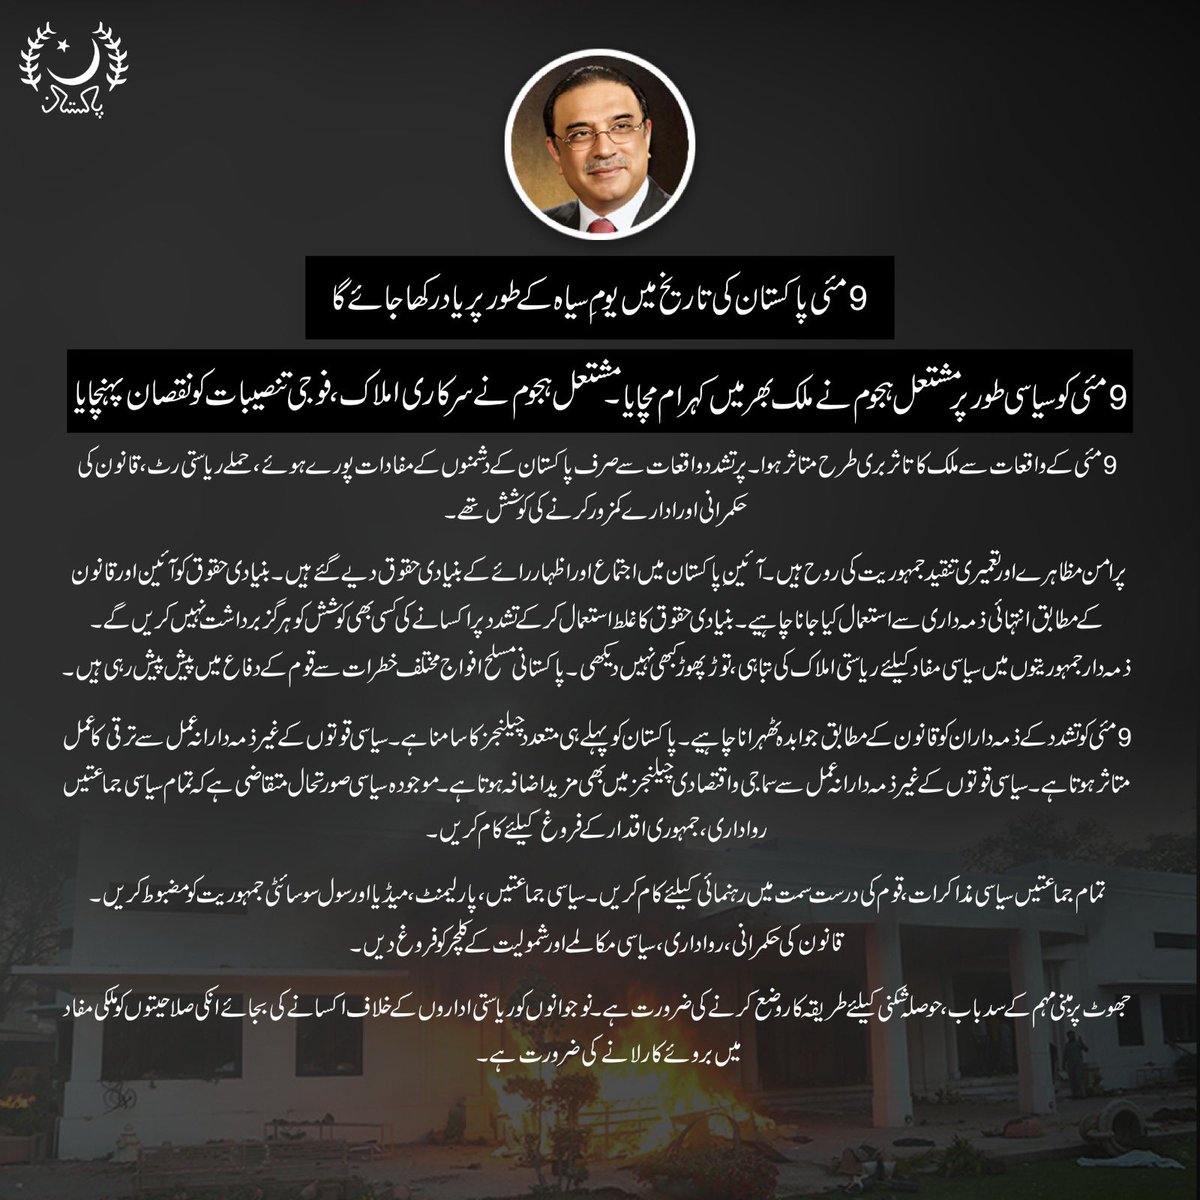 صدر مملکت آصف علی زرداری کی 9 مئی کے پرتشدد واقعات کی مذمت۔